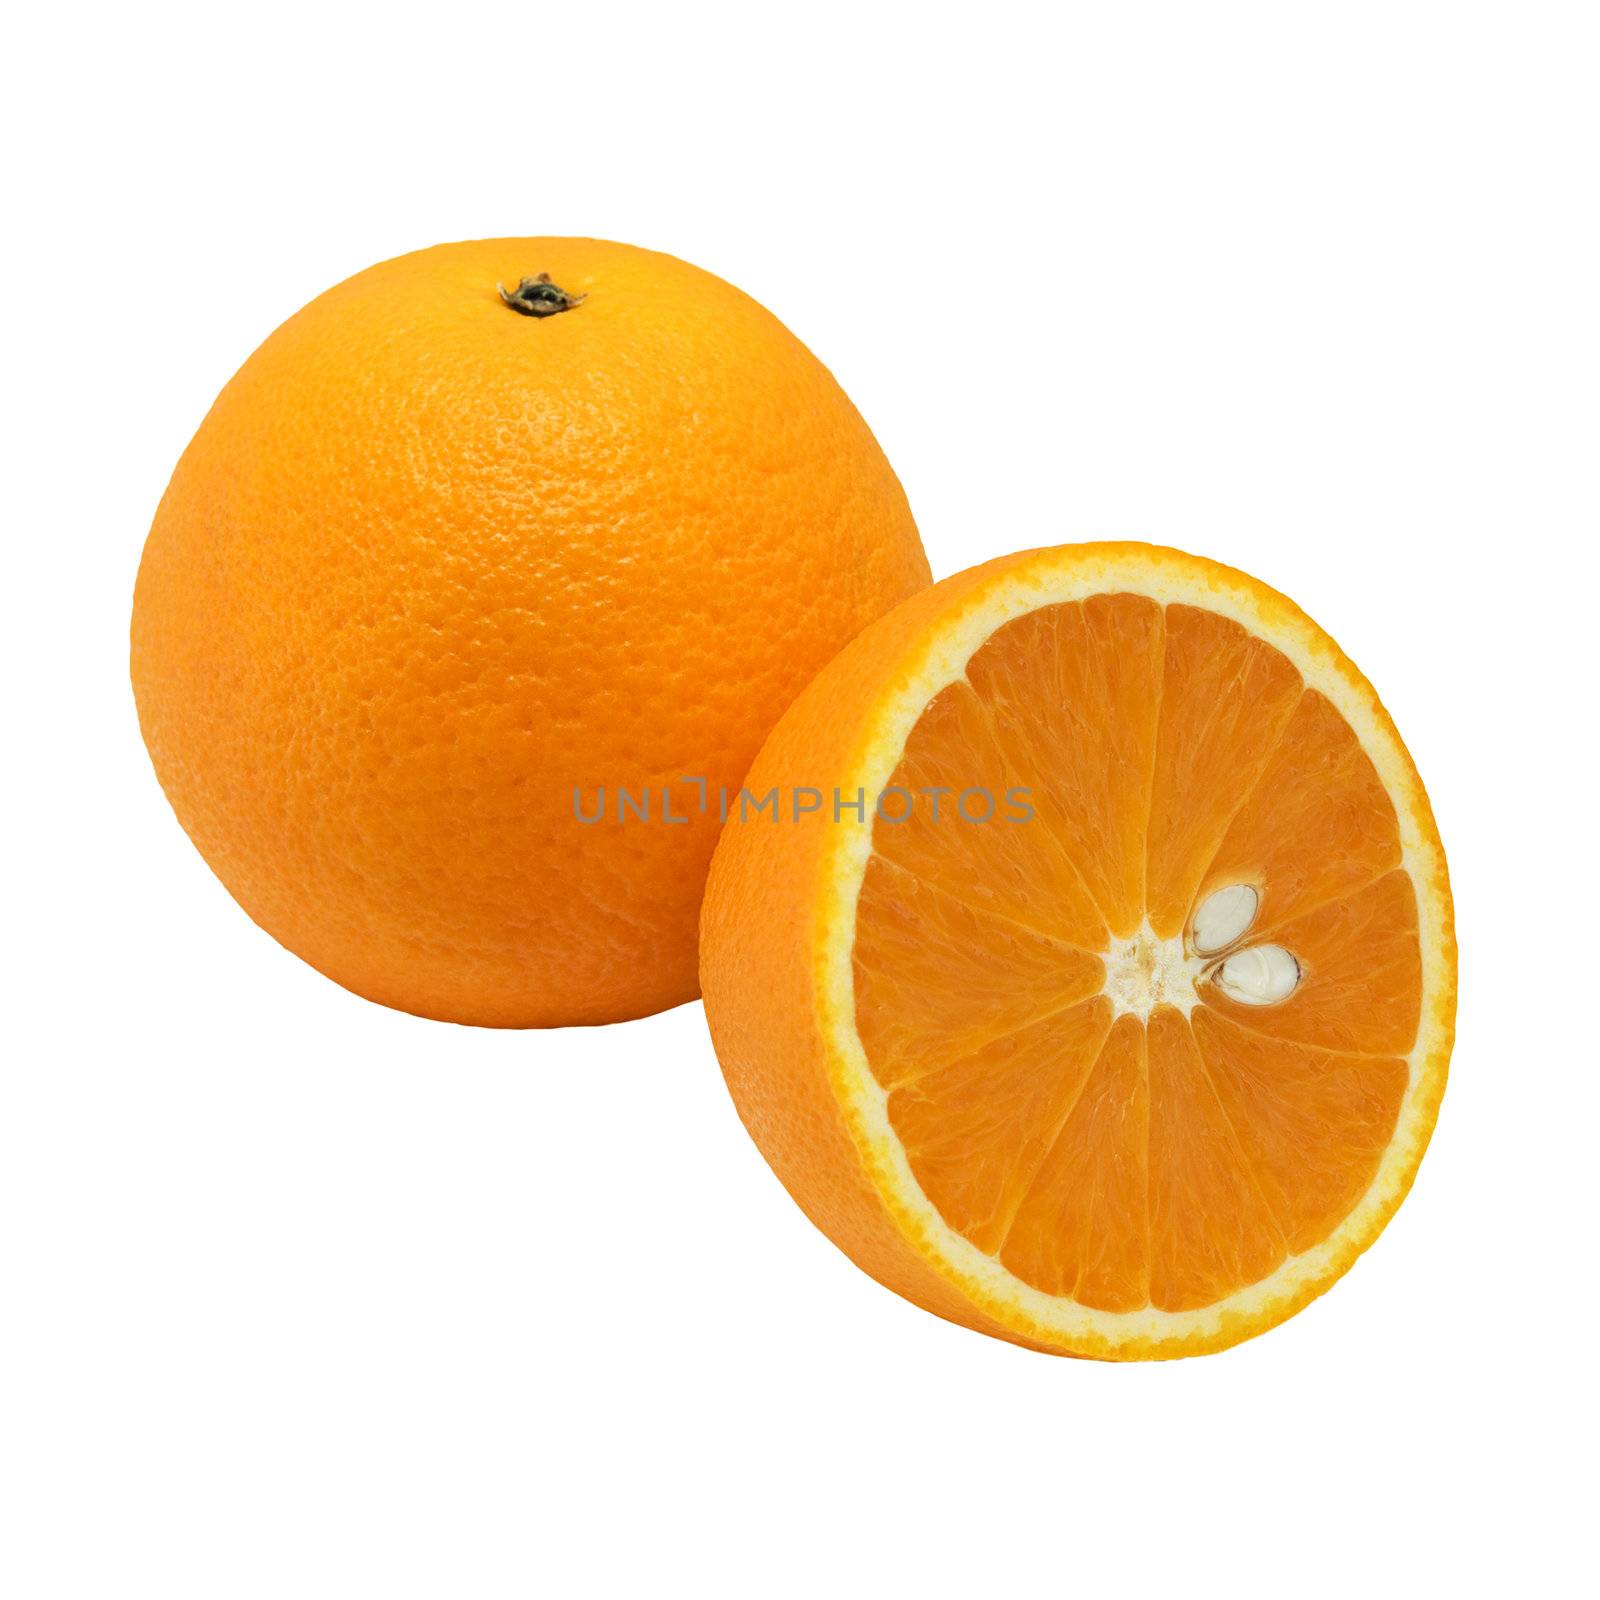 Orange by pzaxe